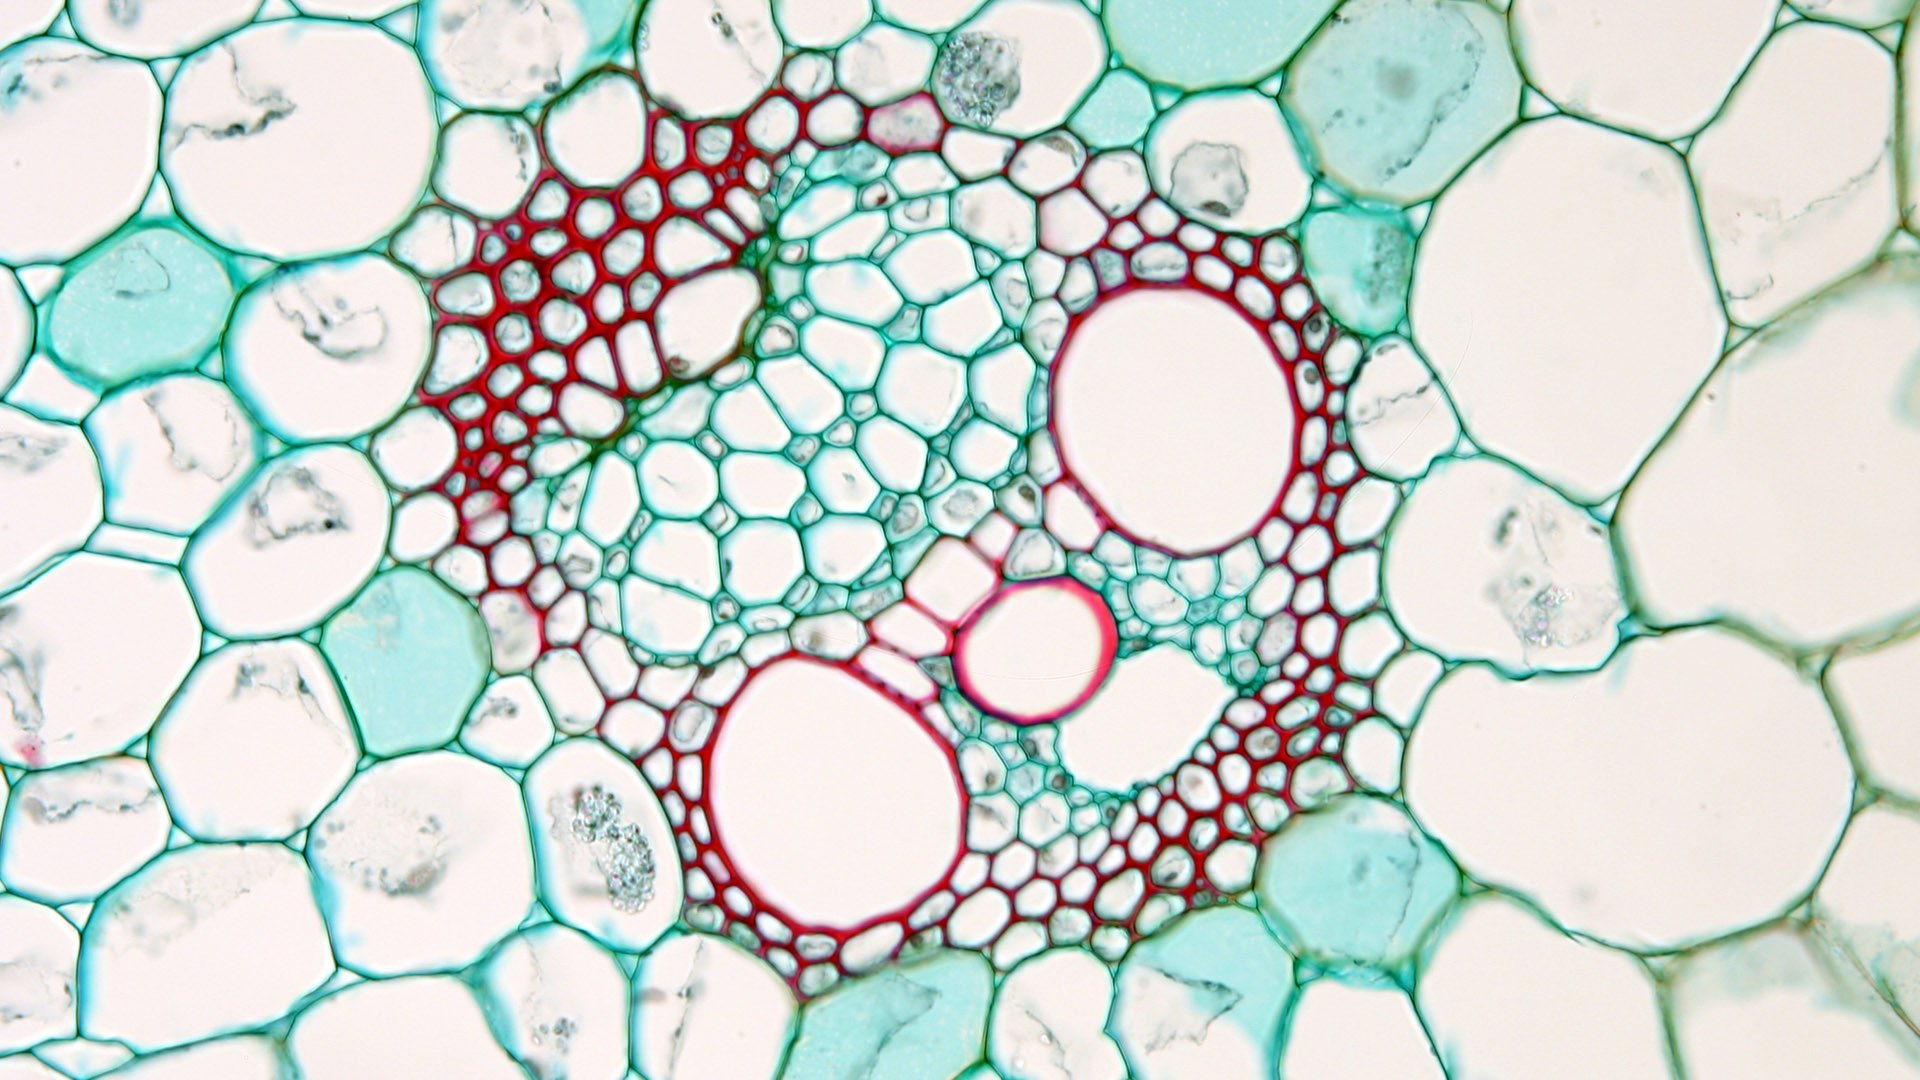 Клетка без воды. Ксилема микроскоп. Эпидерма колленхима. Колленхима ткани растений микроскоп. Механическая ткань у элодеи.